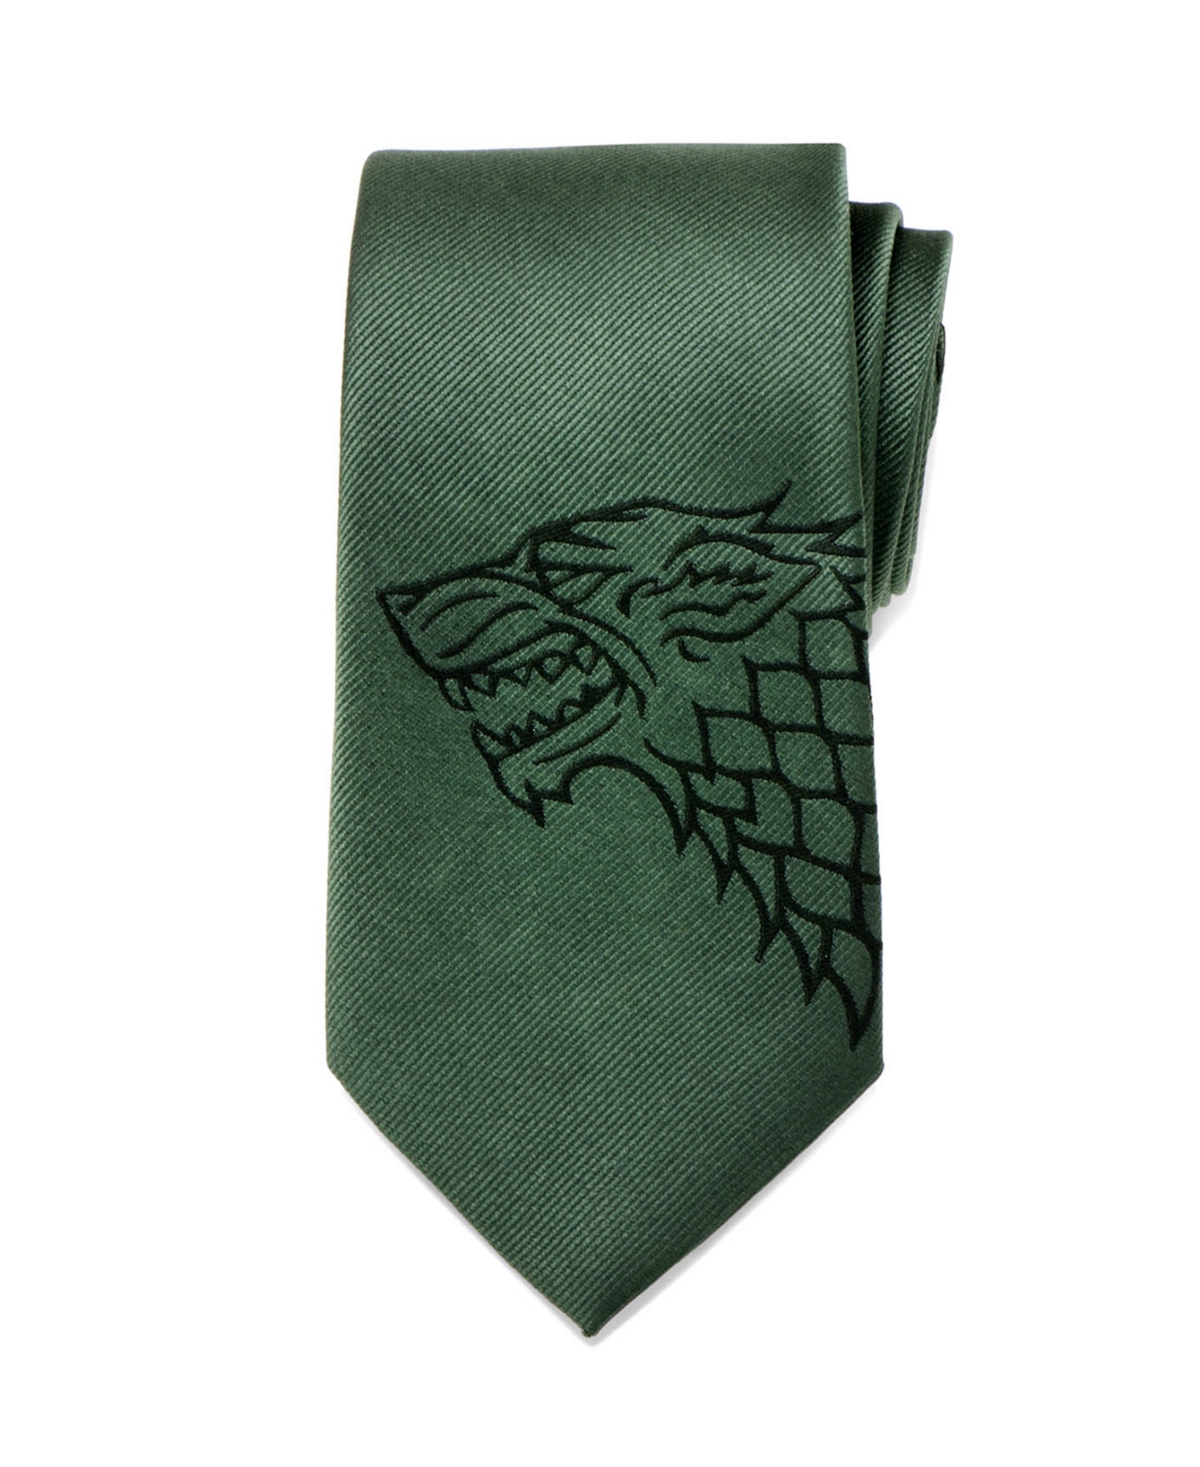 Game of Thrones Stark Direwolf Men's Tie